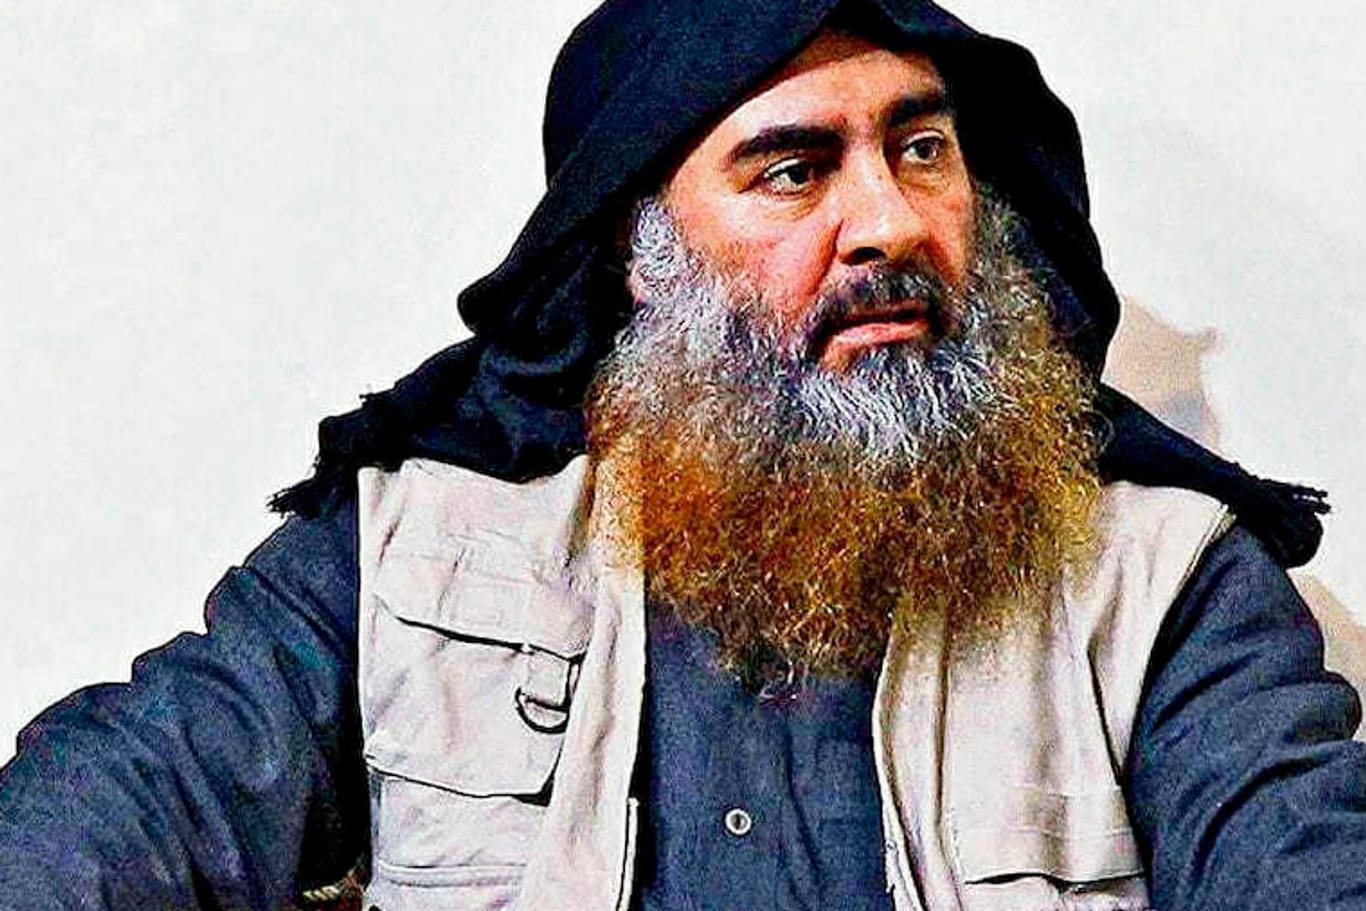 Abu Bakr al-Bagdadi, der getötete Anführer der Terrormiliz "Islamischer Staat": Ausgereiste IS-Anhänger werden mit dem Zusatz "ausländische Kämpfer" im Schengener Informationssystem gespeichert.